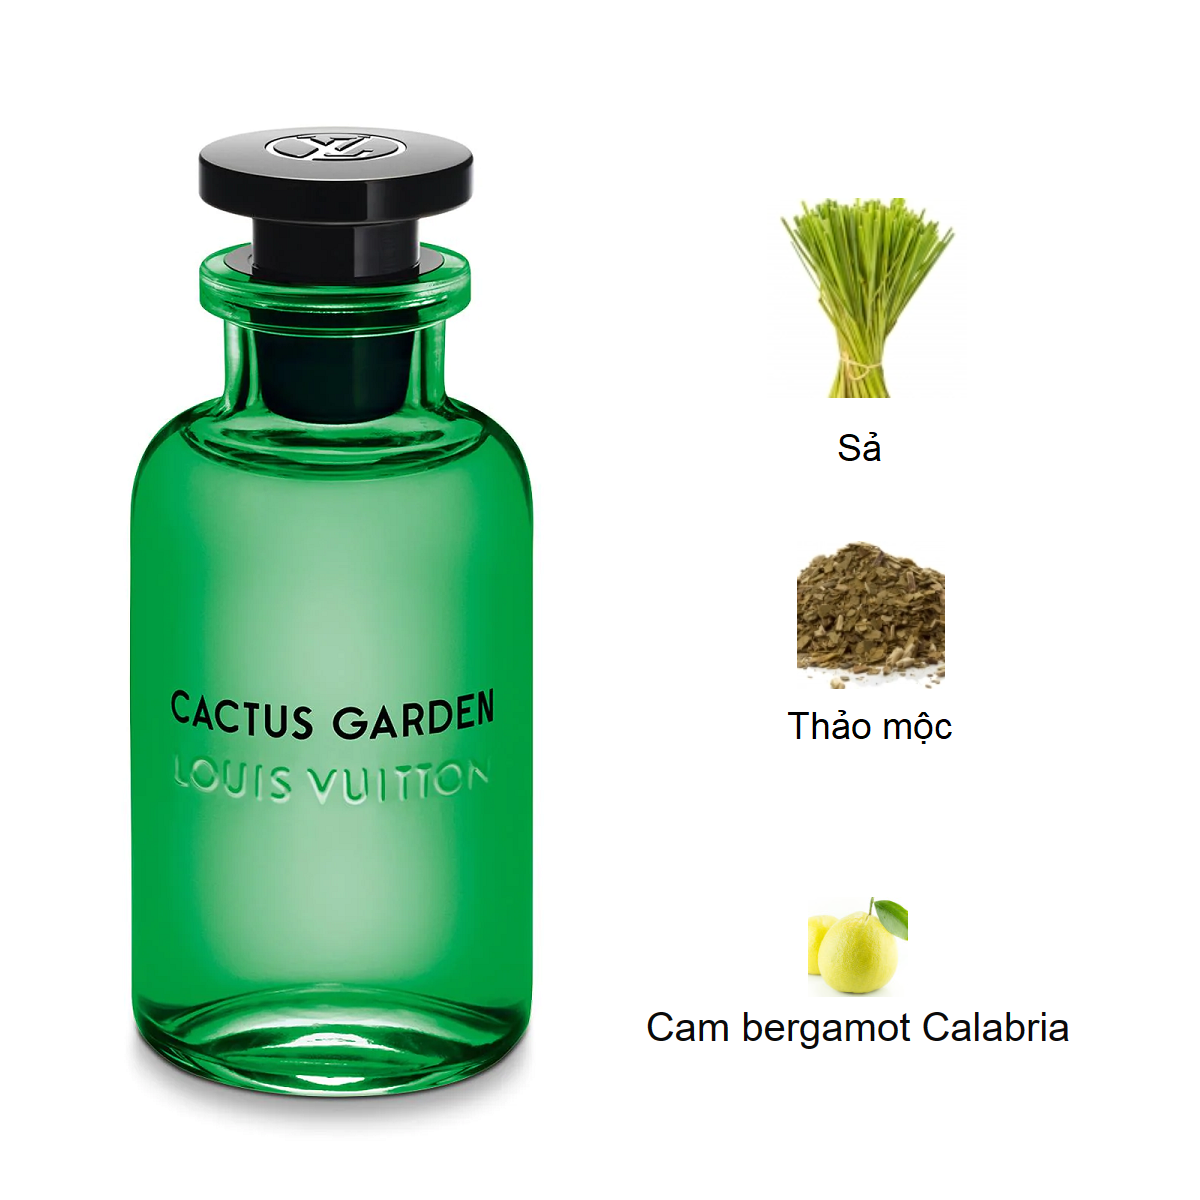 Louis-Vuitton-Cactus-Garden-mui-huong